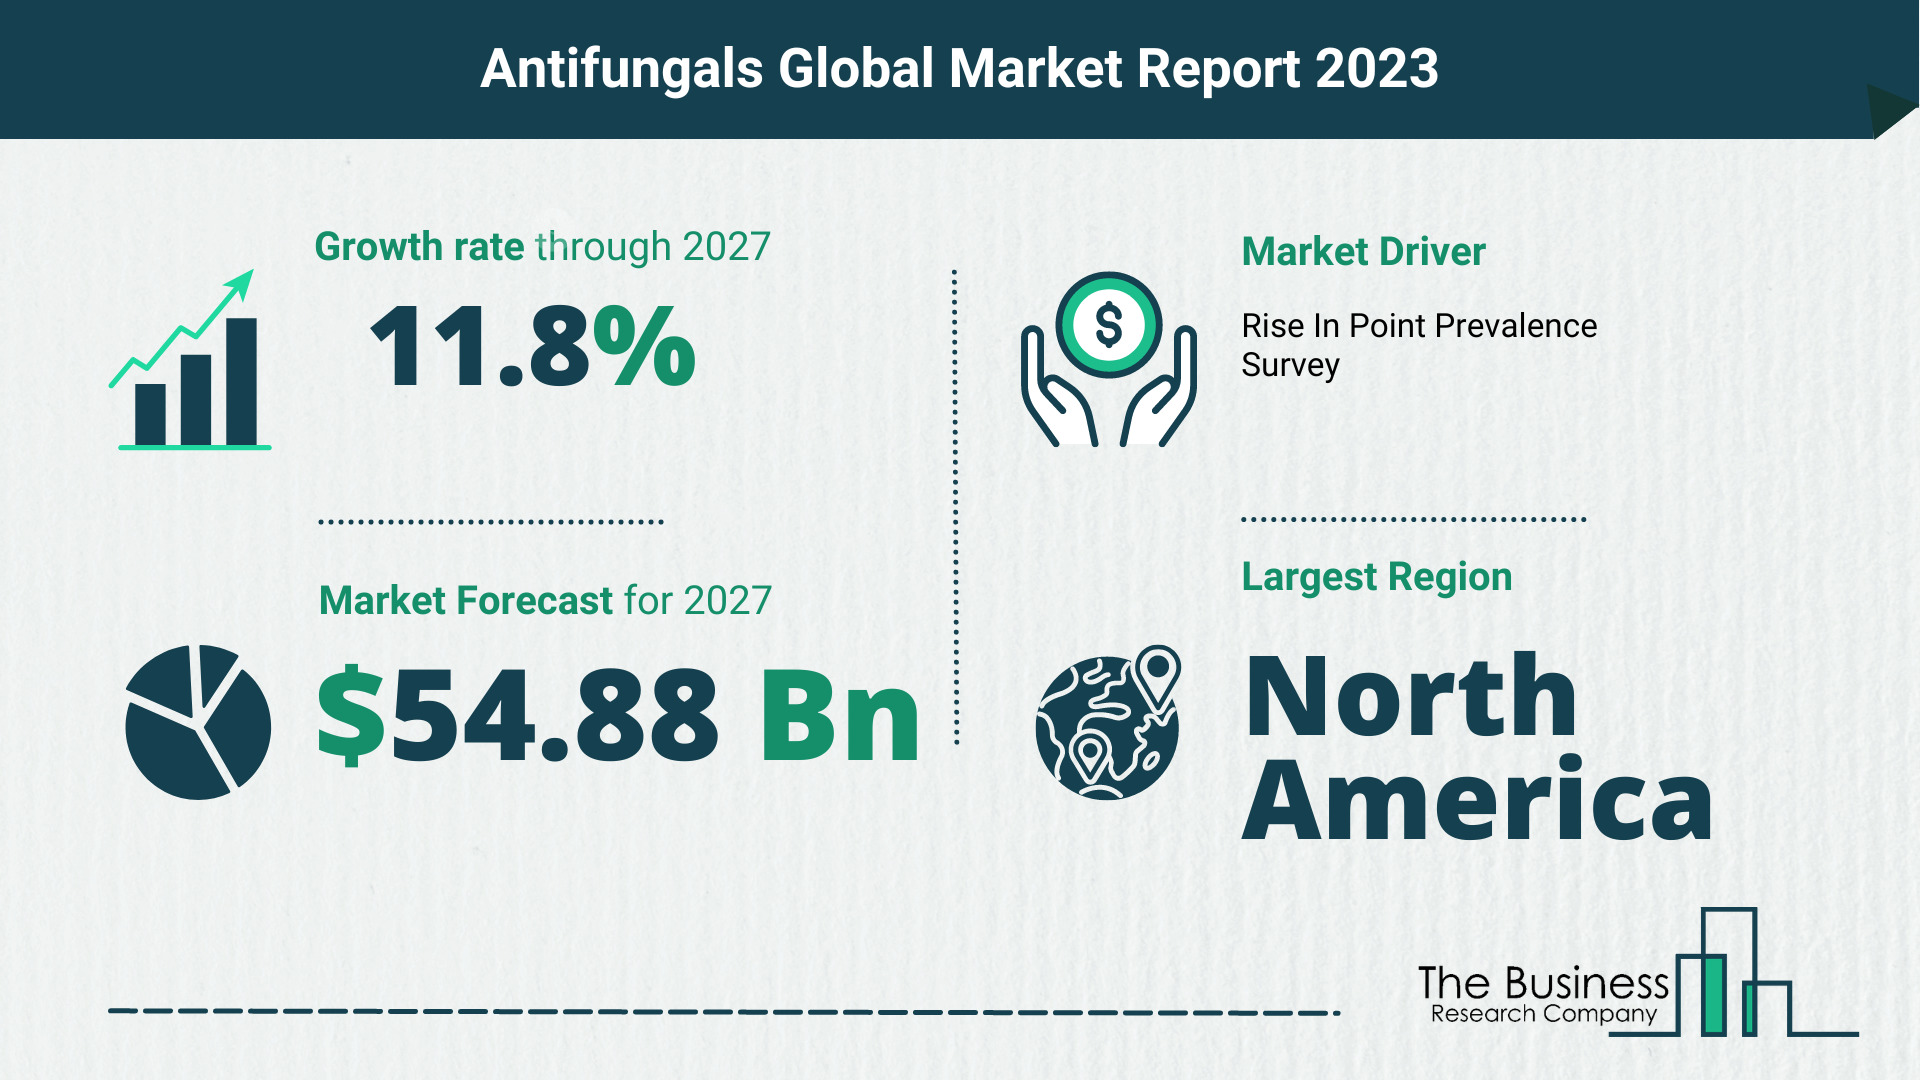 Global Antifungals Market Trends